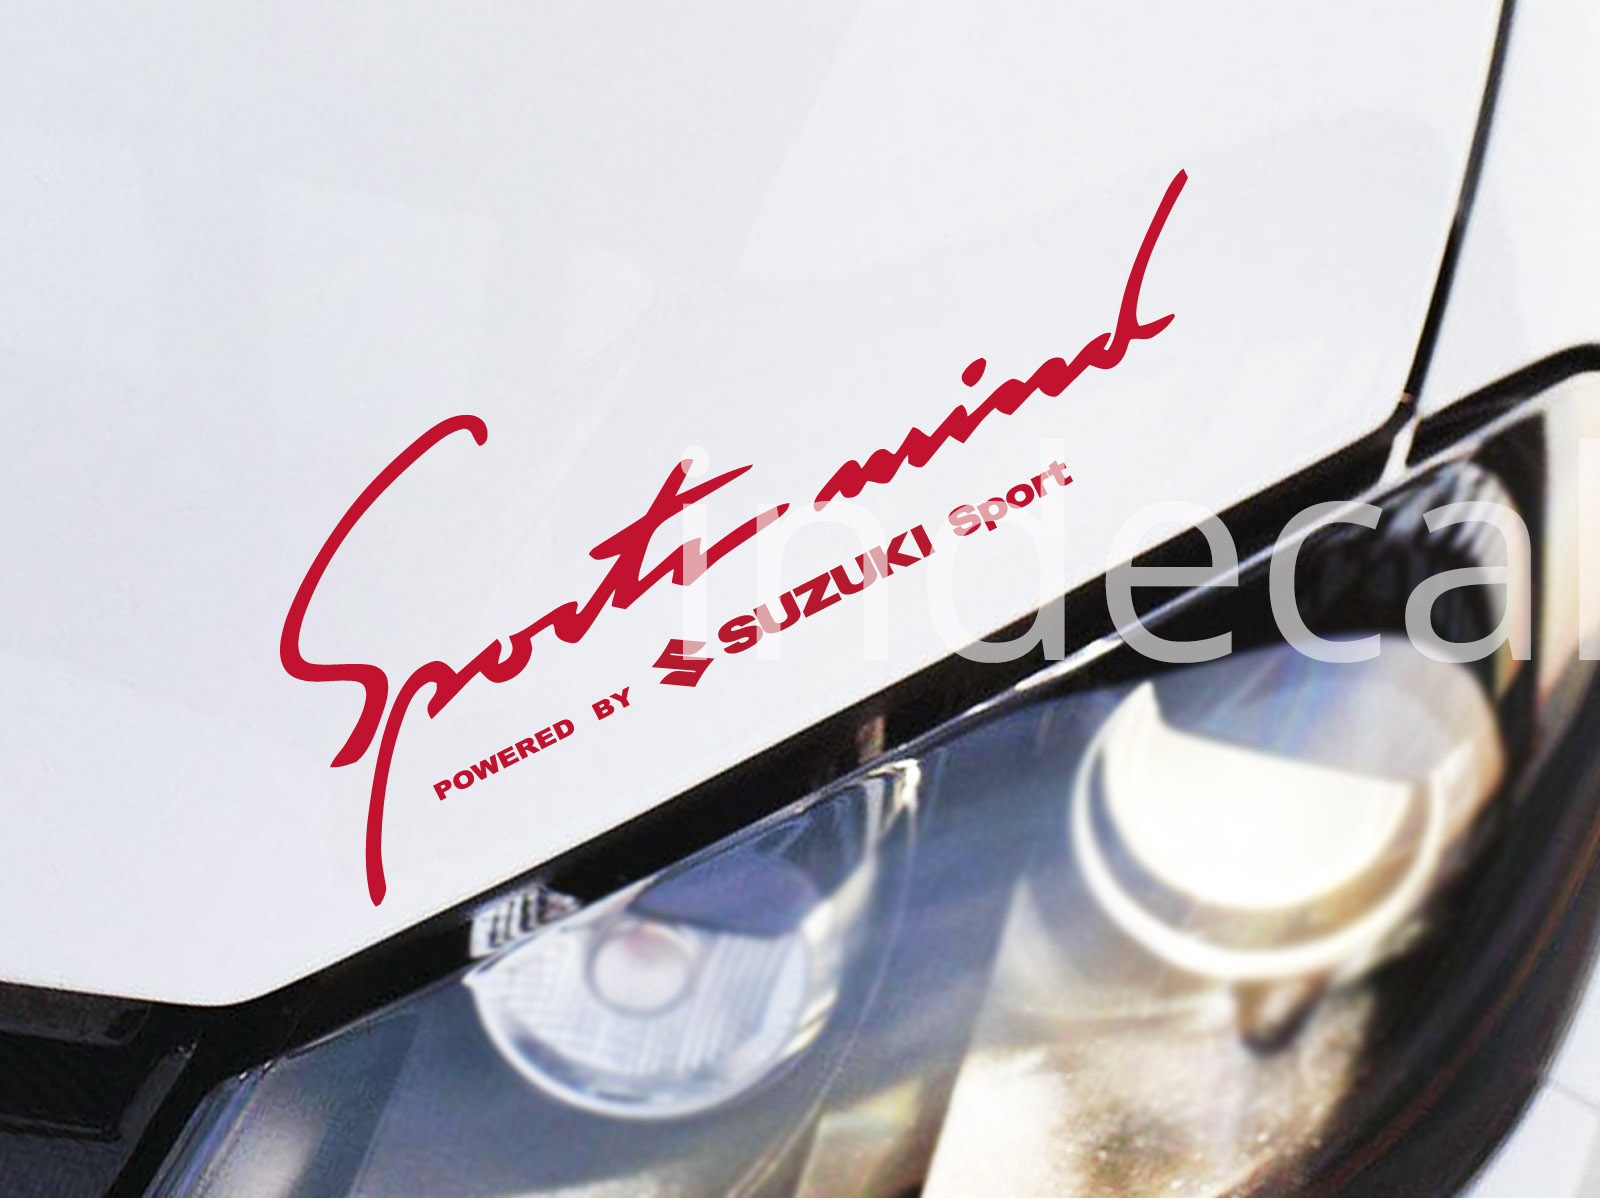 1 x Suzuki Sports Mind Sticker - Red